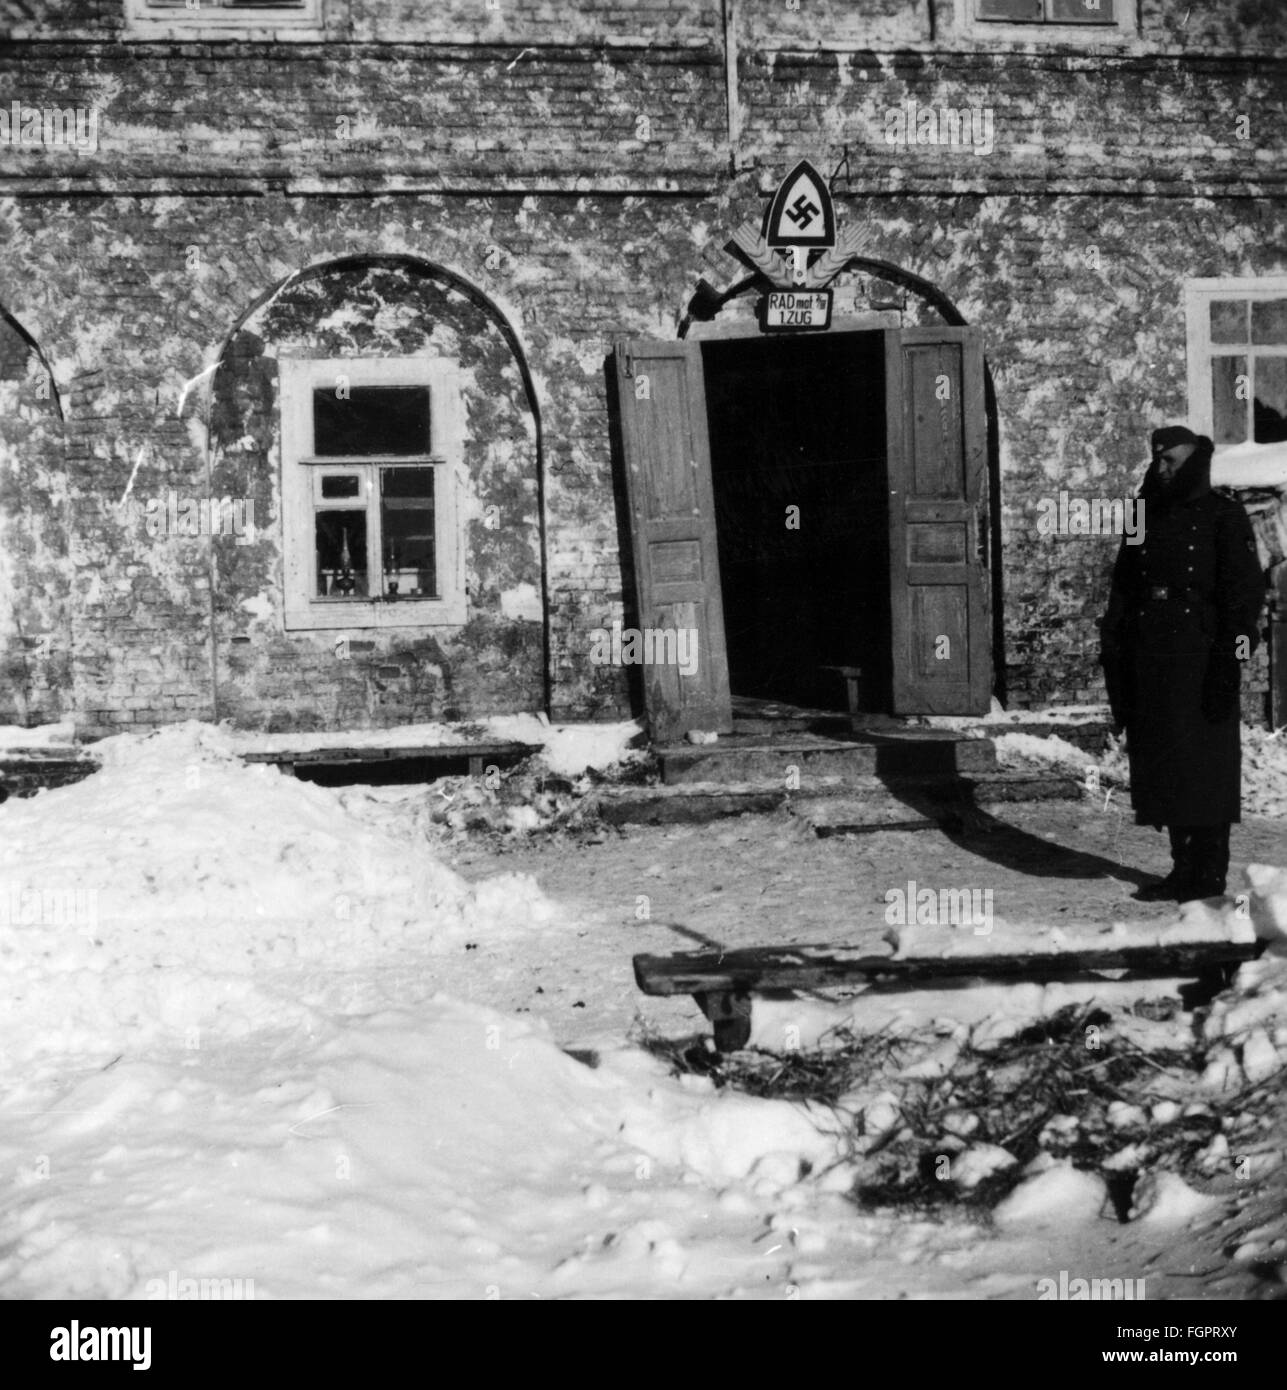 Nazional socialismo / nazismo, Reichsarbeitsdienst (Reich Labour Service), membro di un'unità Reichsarbeitsdienst, schierata sul fronte orientale, di fronte ai quartieri invernali dell'unità, Ucraina, inverno 1941/1942, diritti aggiuntivi-clearences-non disponibili Foto Stock